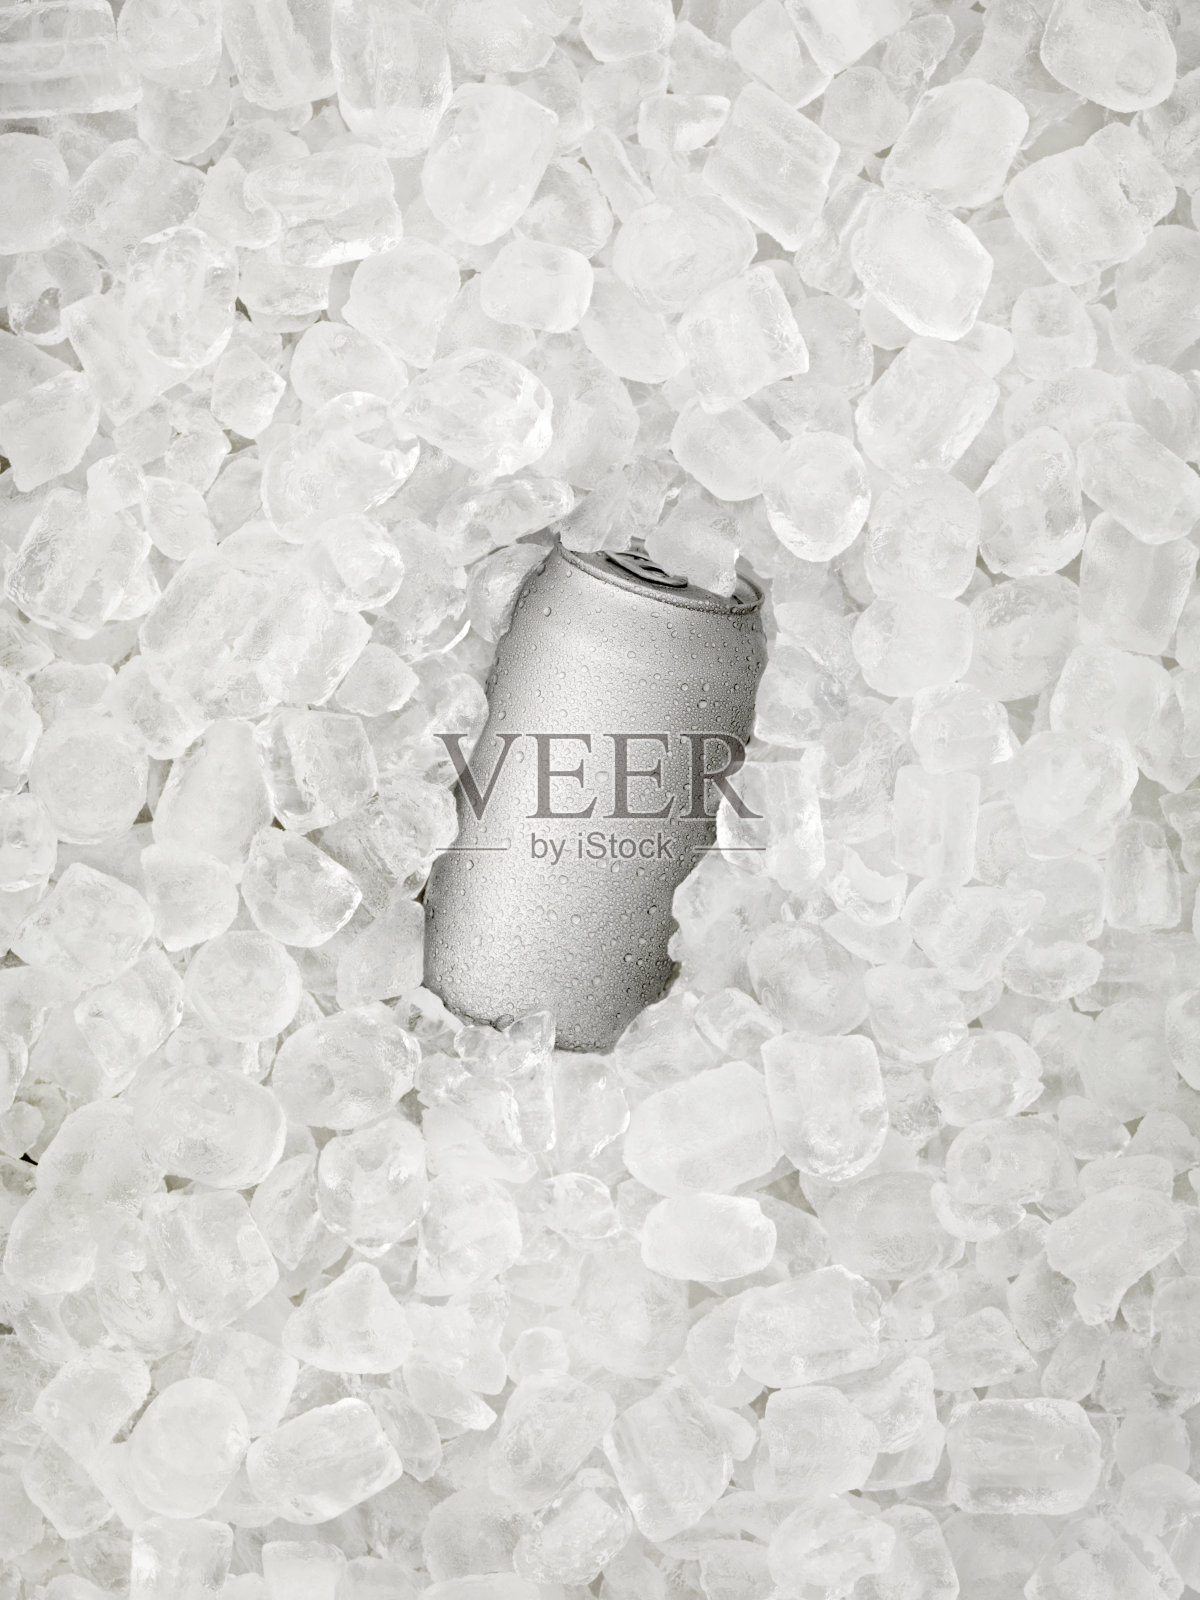 冰啤酒罐覆盖在冰滴上照片摄影图片